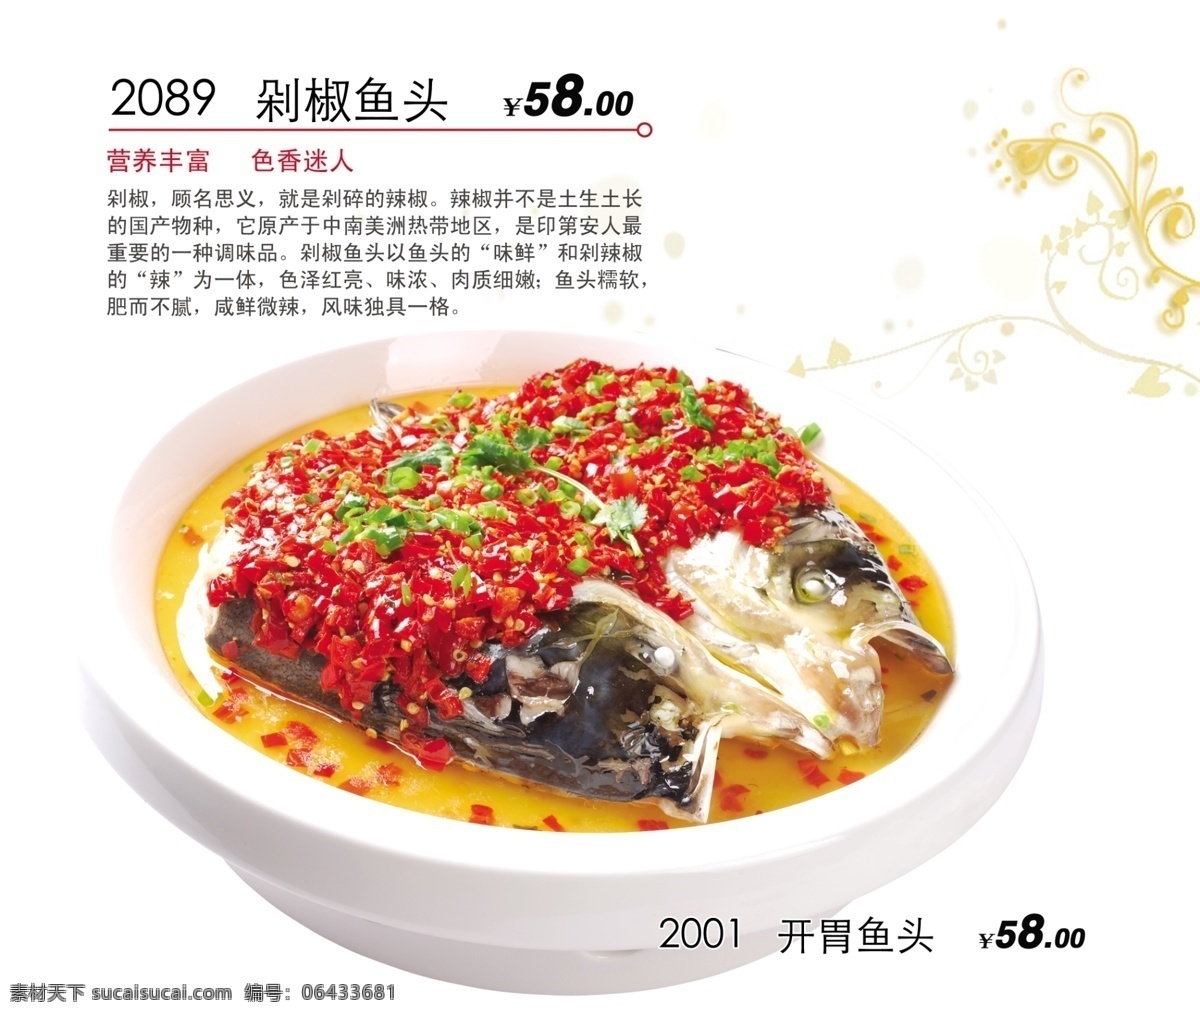 剁椒鱼头 开胃鱼头 鱼头营养价值 菜单菜谱 广告设计模板 源文件